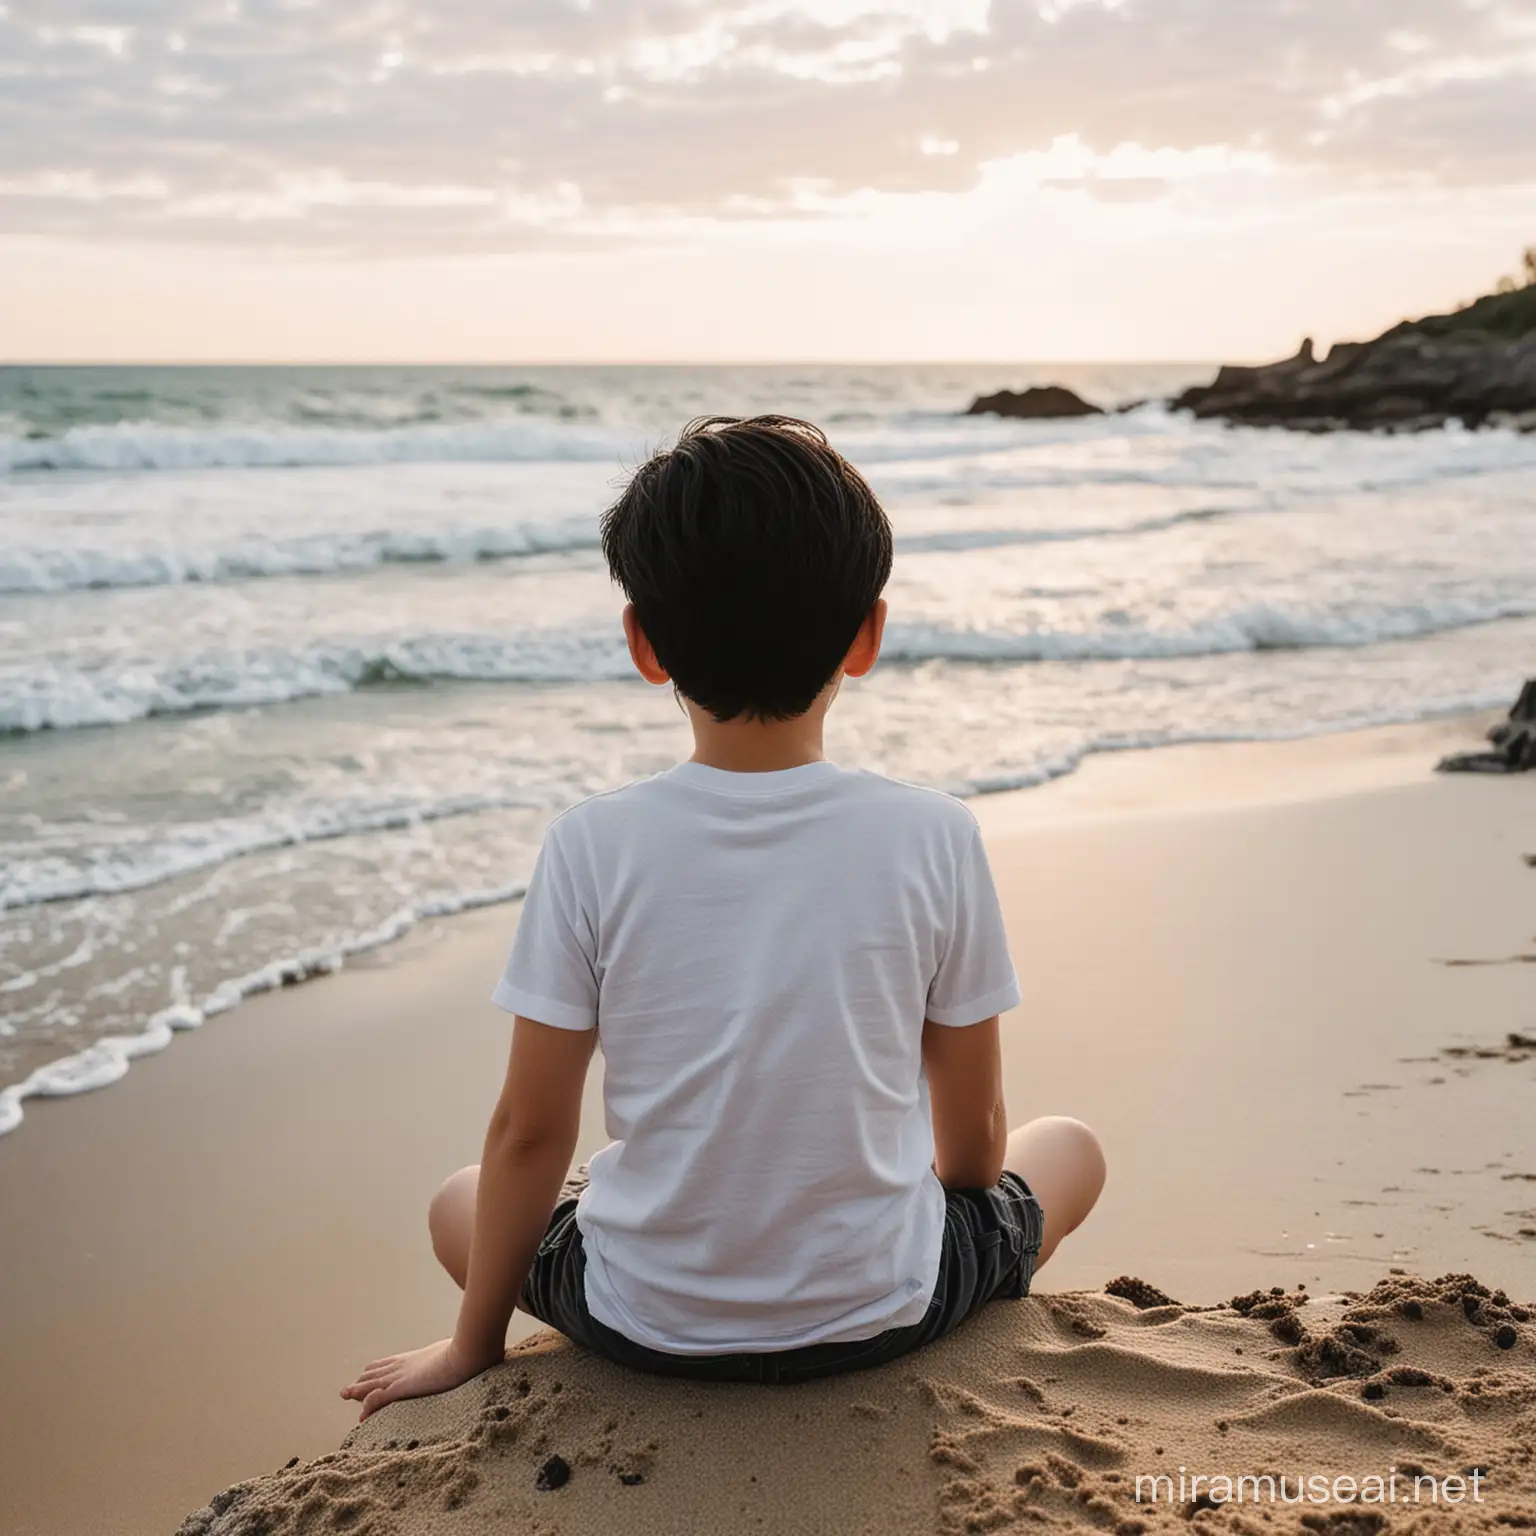 Um menino branco,de cabelos pretos,10 anos,sentado na praia,de costas,olhando pro oceano,ele está sentado de costas olhando para o oceano